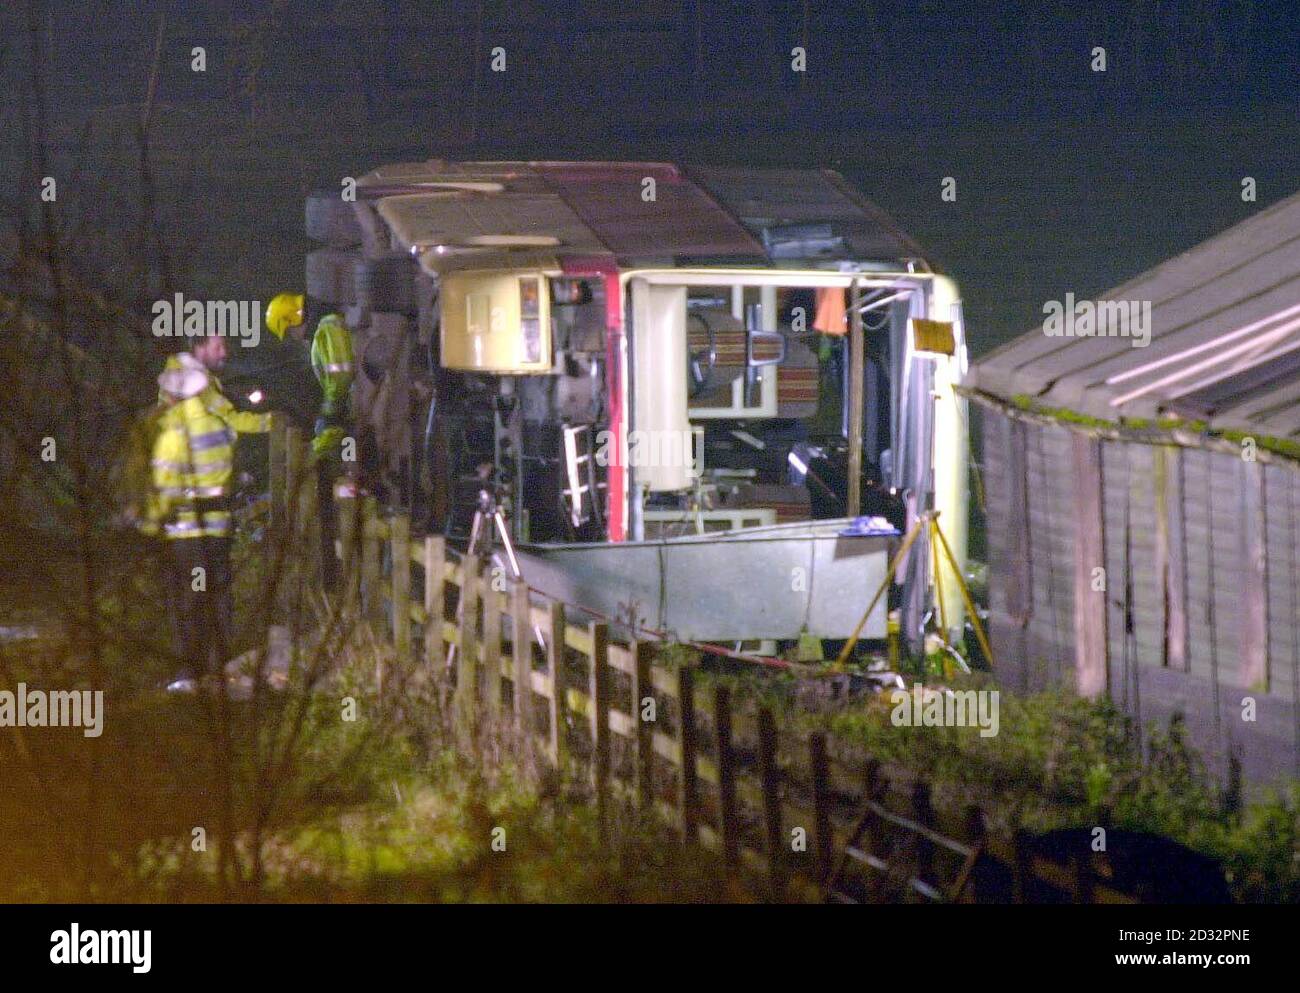 Crash scena sulla M25 autostrada tra gli svincoli 15-16 vicino Slough, Londra ovest. Almeno cinque persone sono state temute morte e 35 feriti dopo che un allenatore da 57 posti ha lasciato la carreggiata e ribaltato. Foto Stock